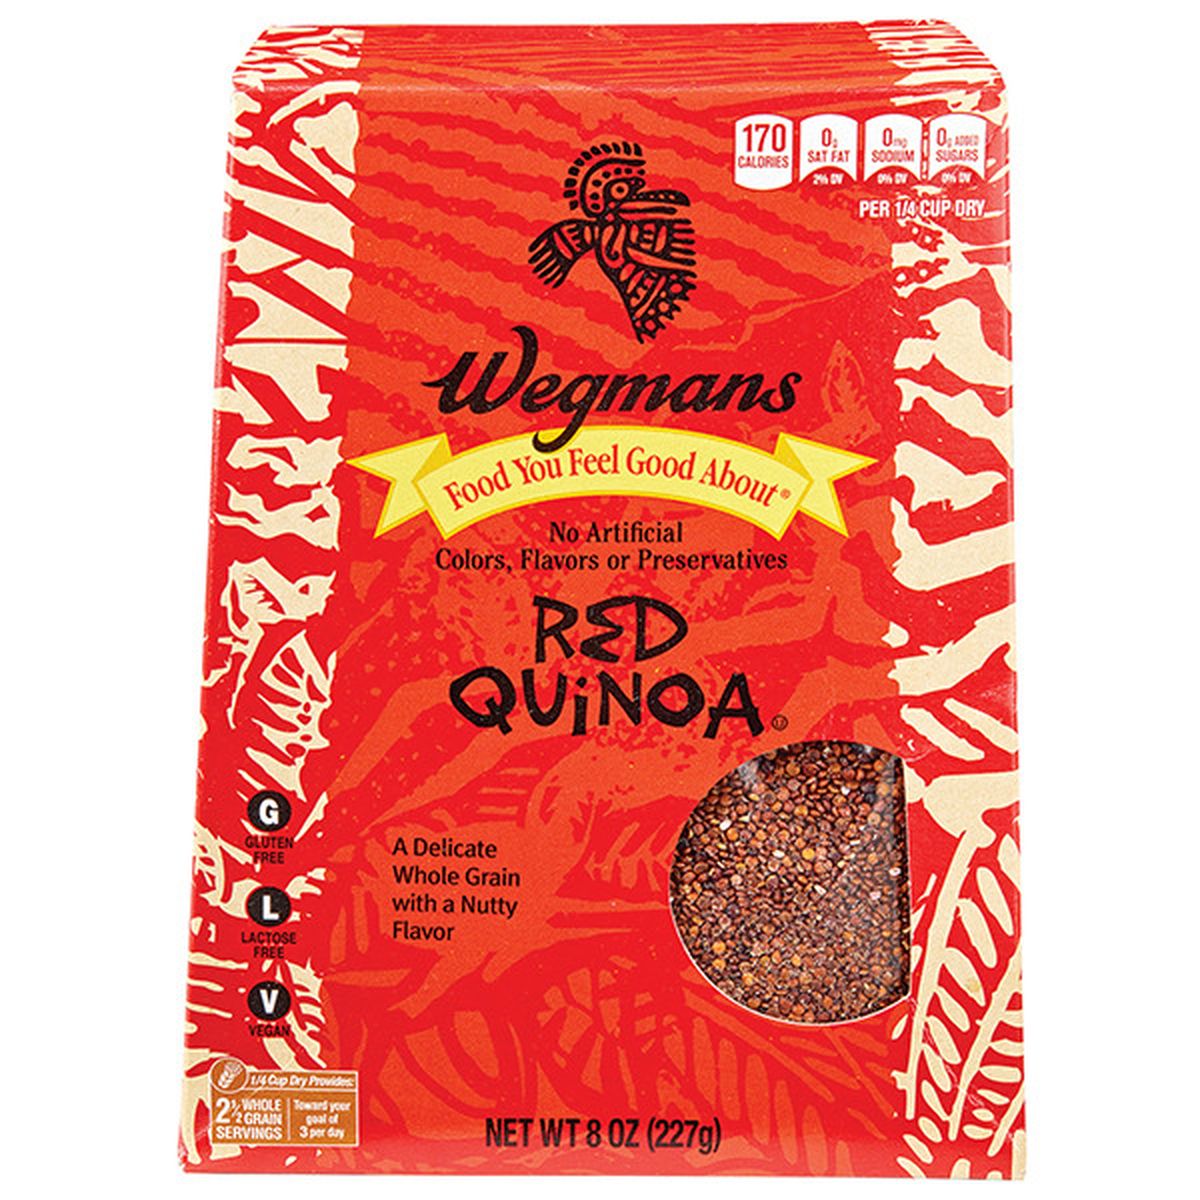 Calories in Wegmans Red Quinoa